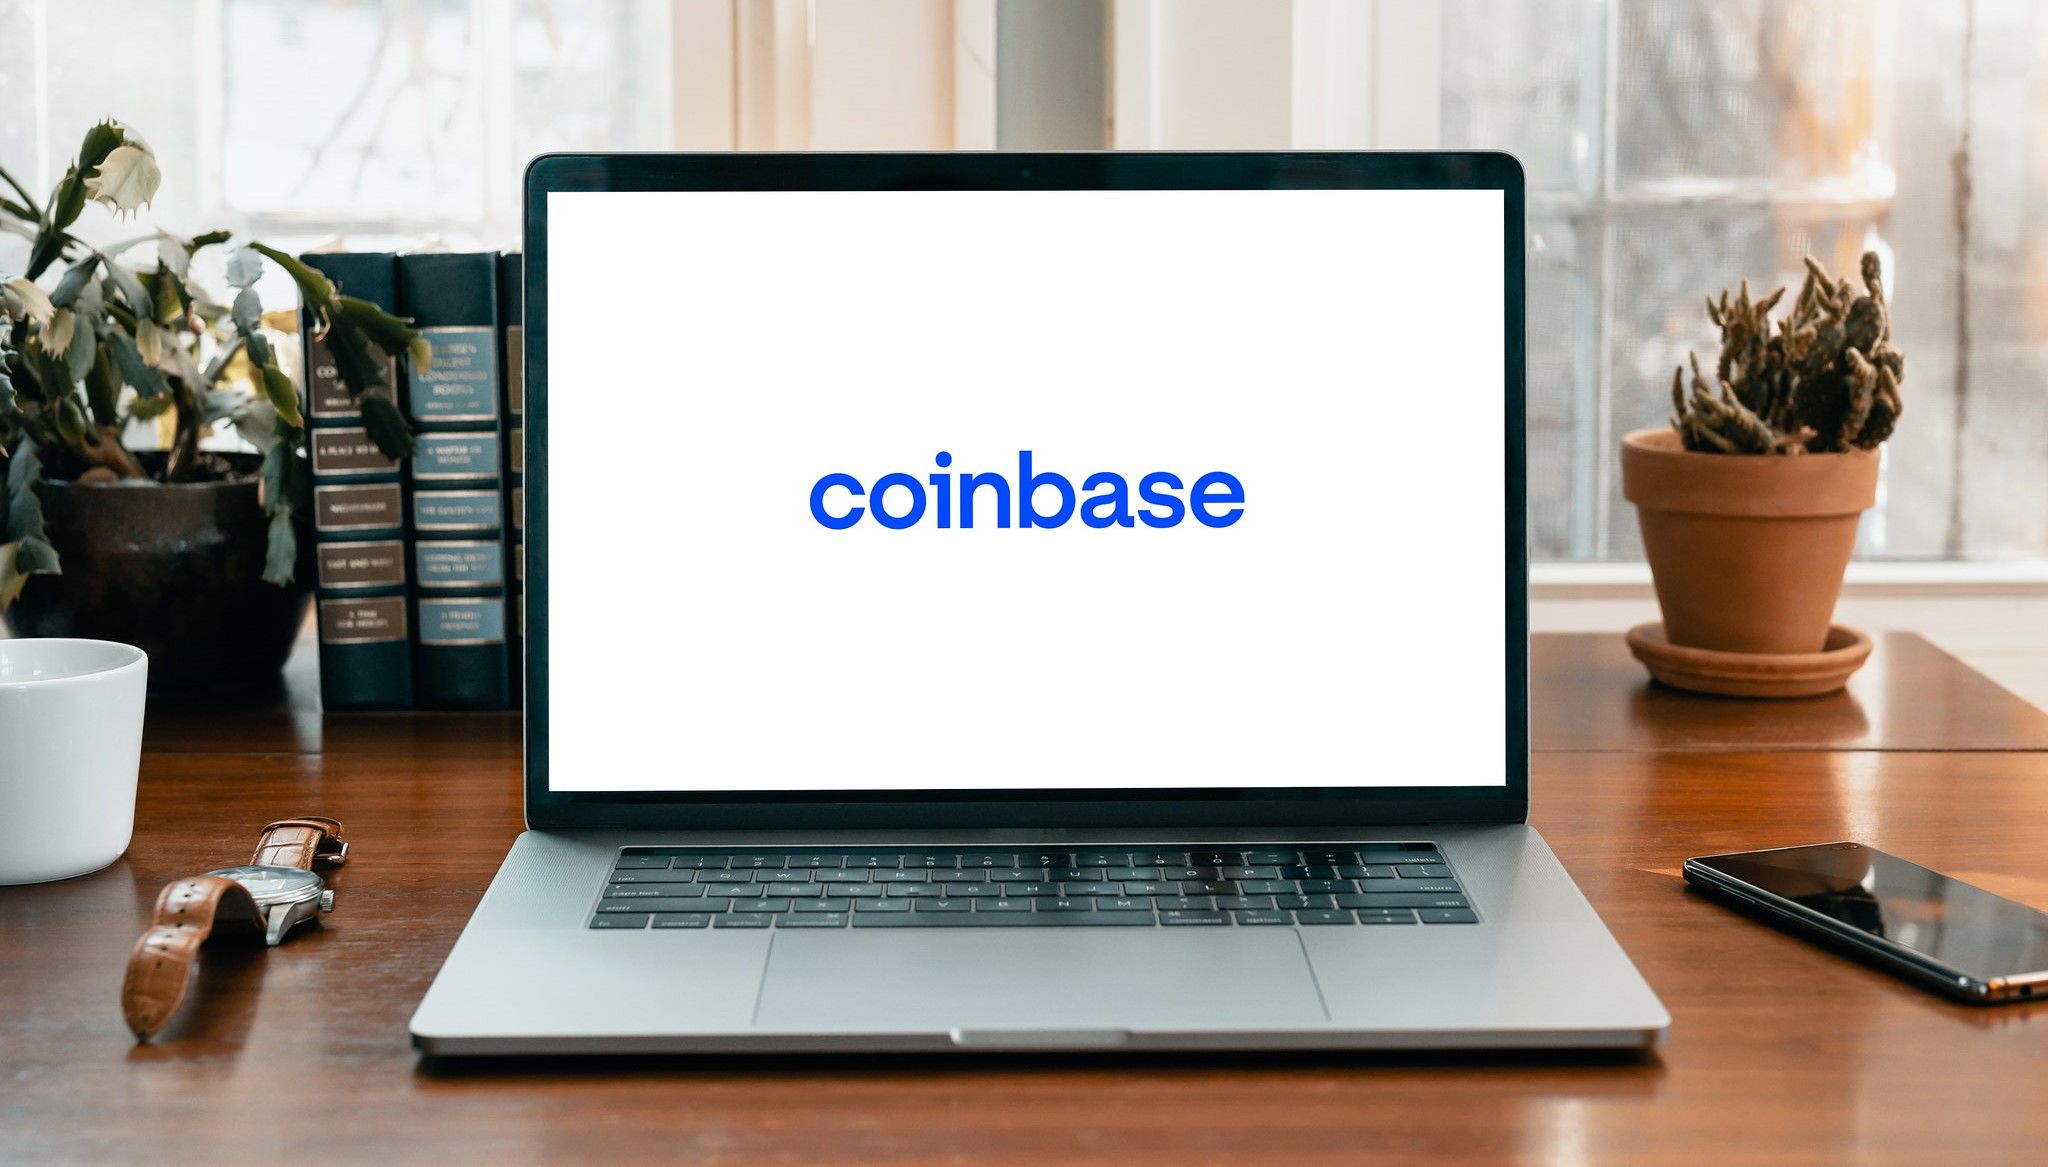 logo coinbase trên màn hình máy tính xách tay